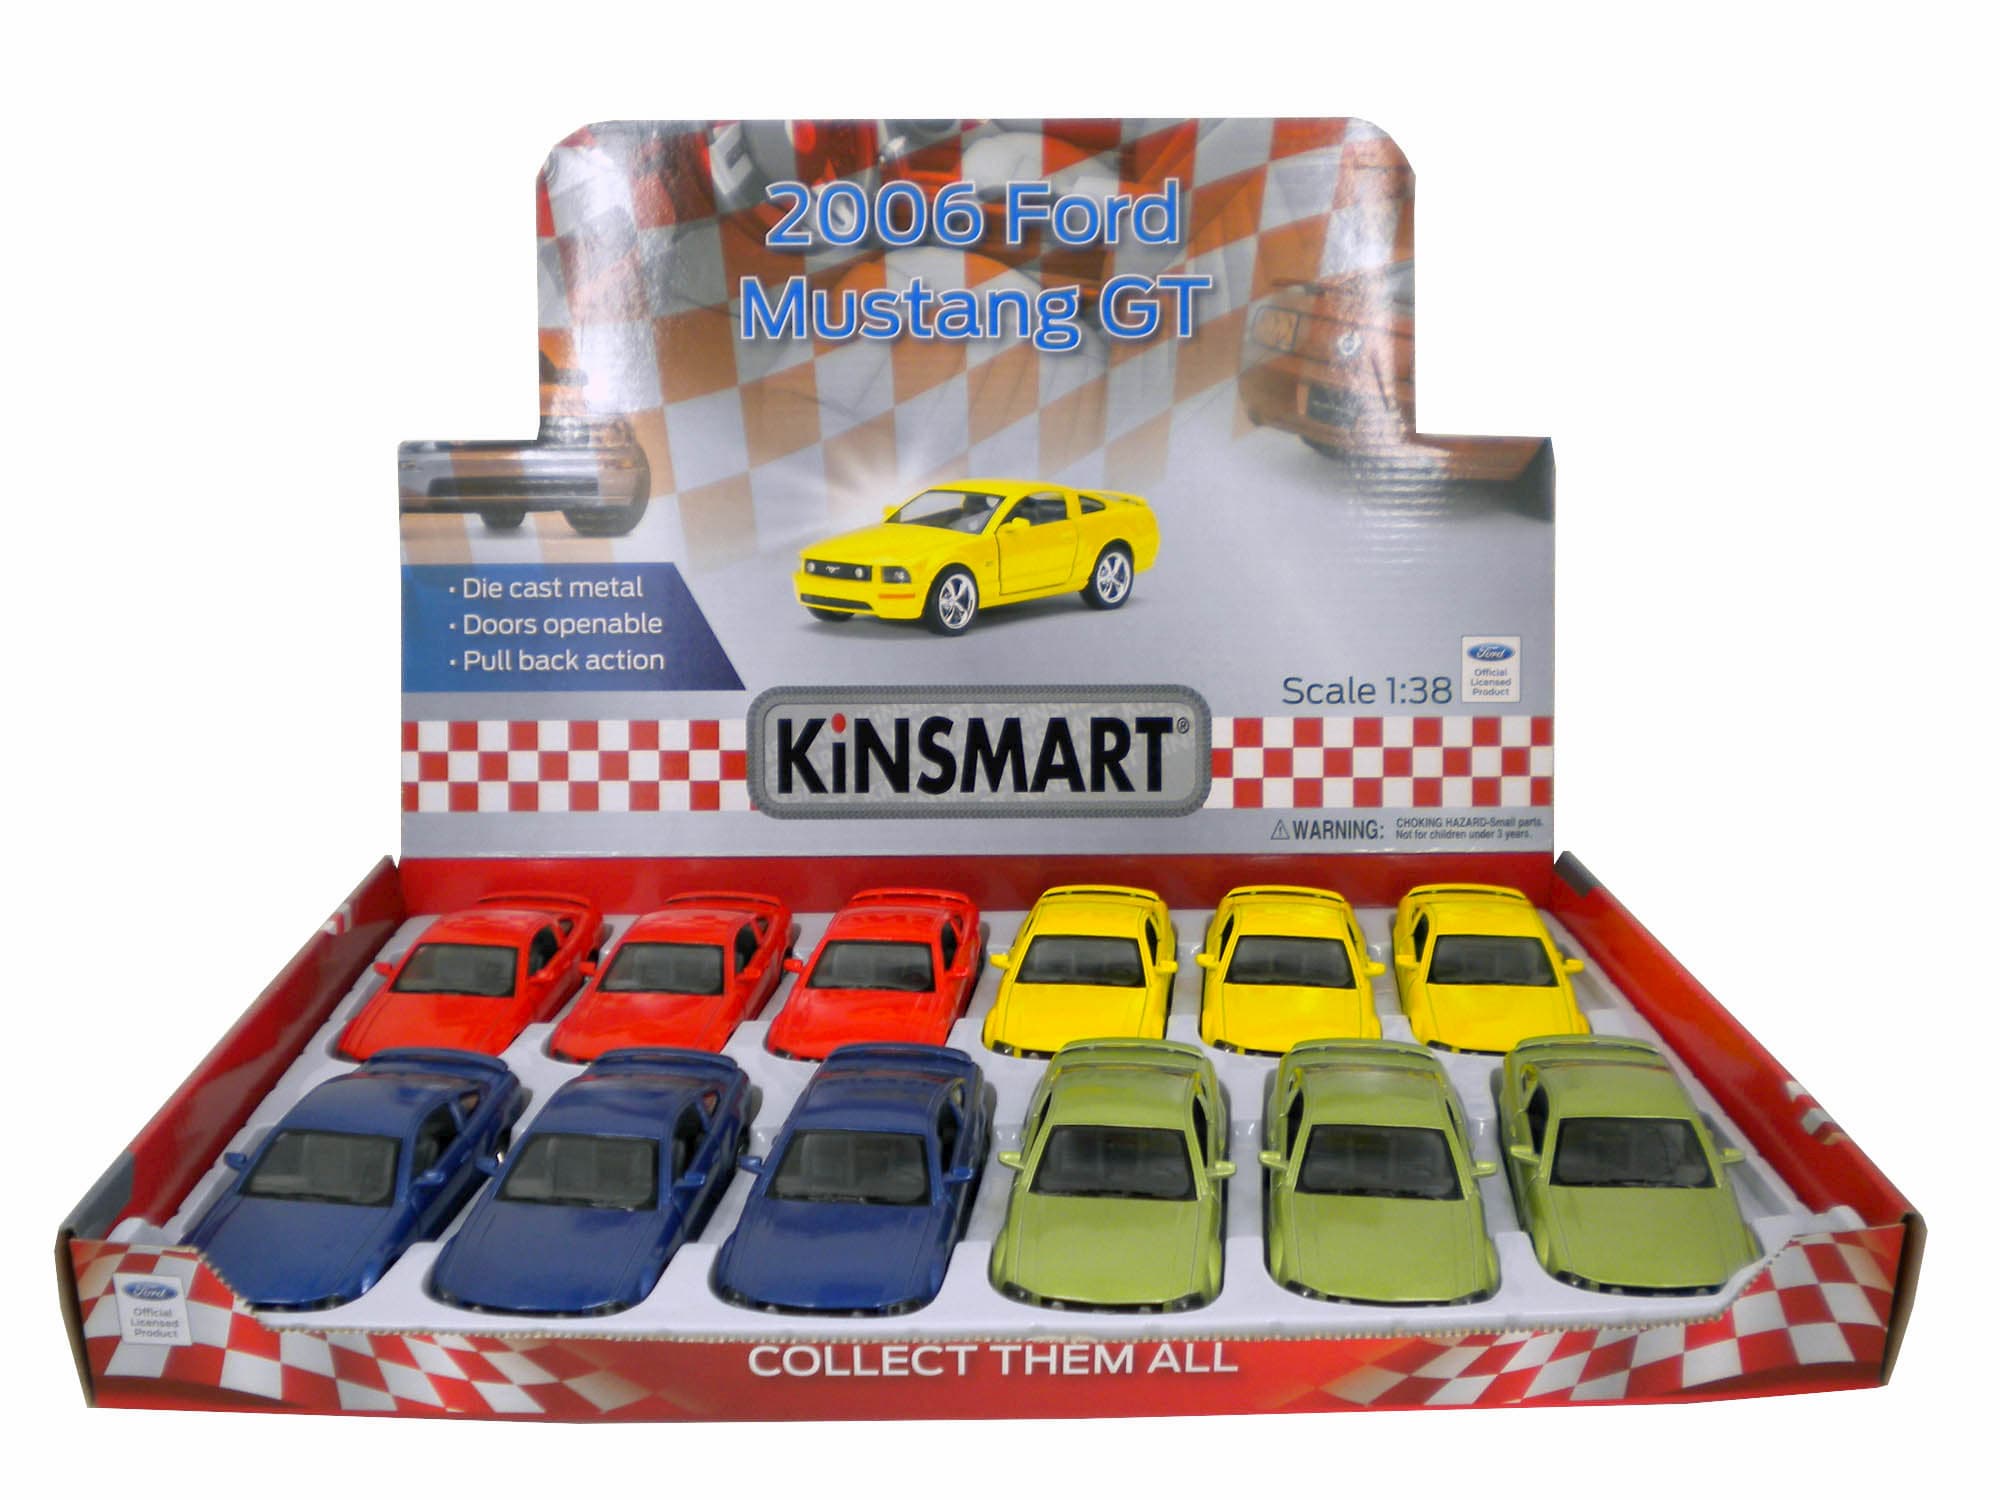 Металлическая машинка Kinsmart 1:38 «2006 Ford Mustang GT» KT5091D инерционная / Желтый